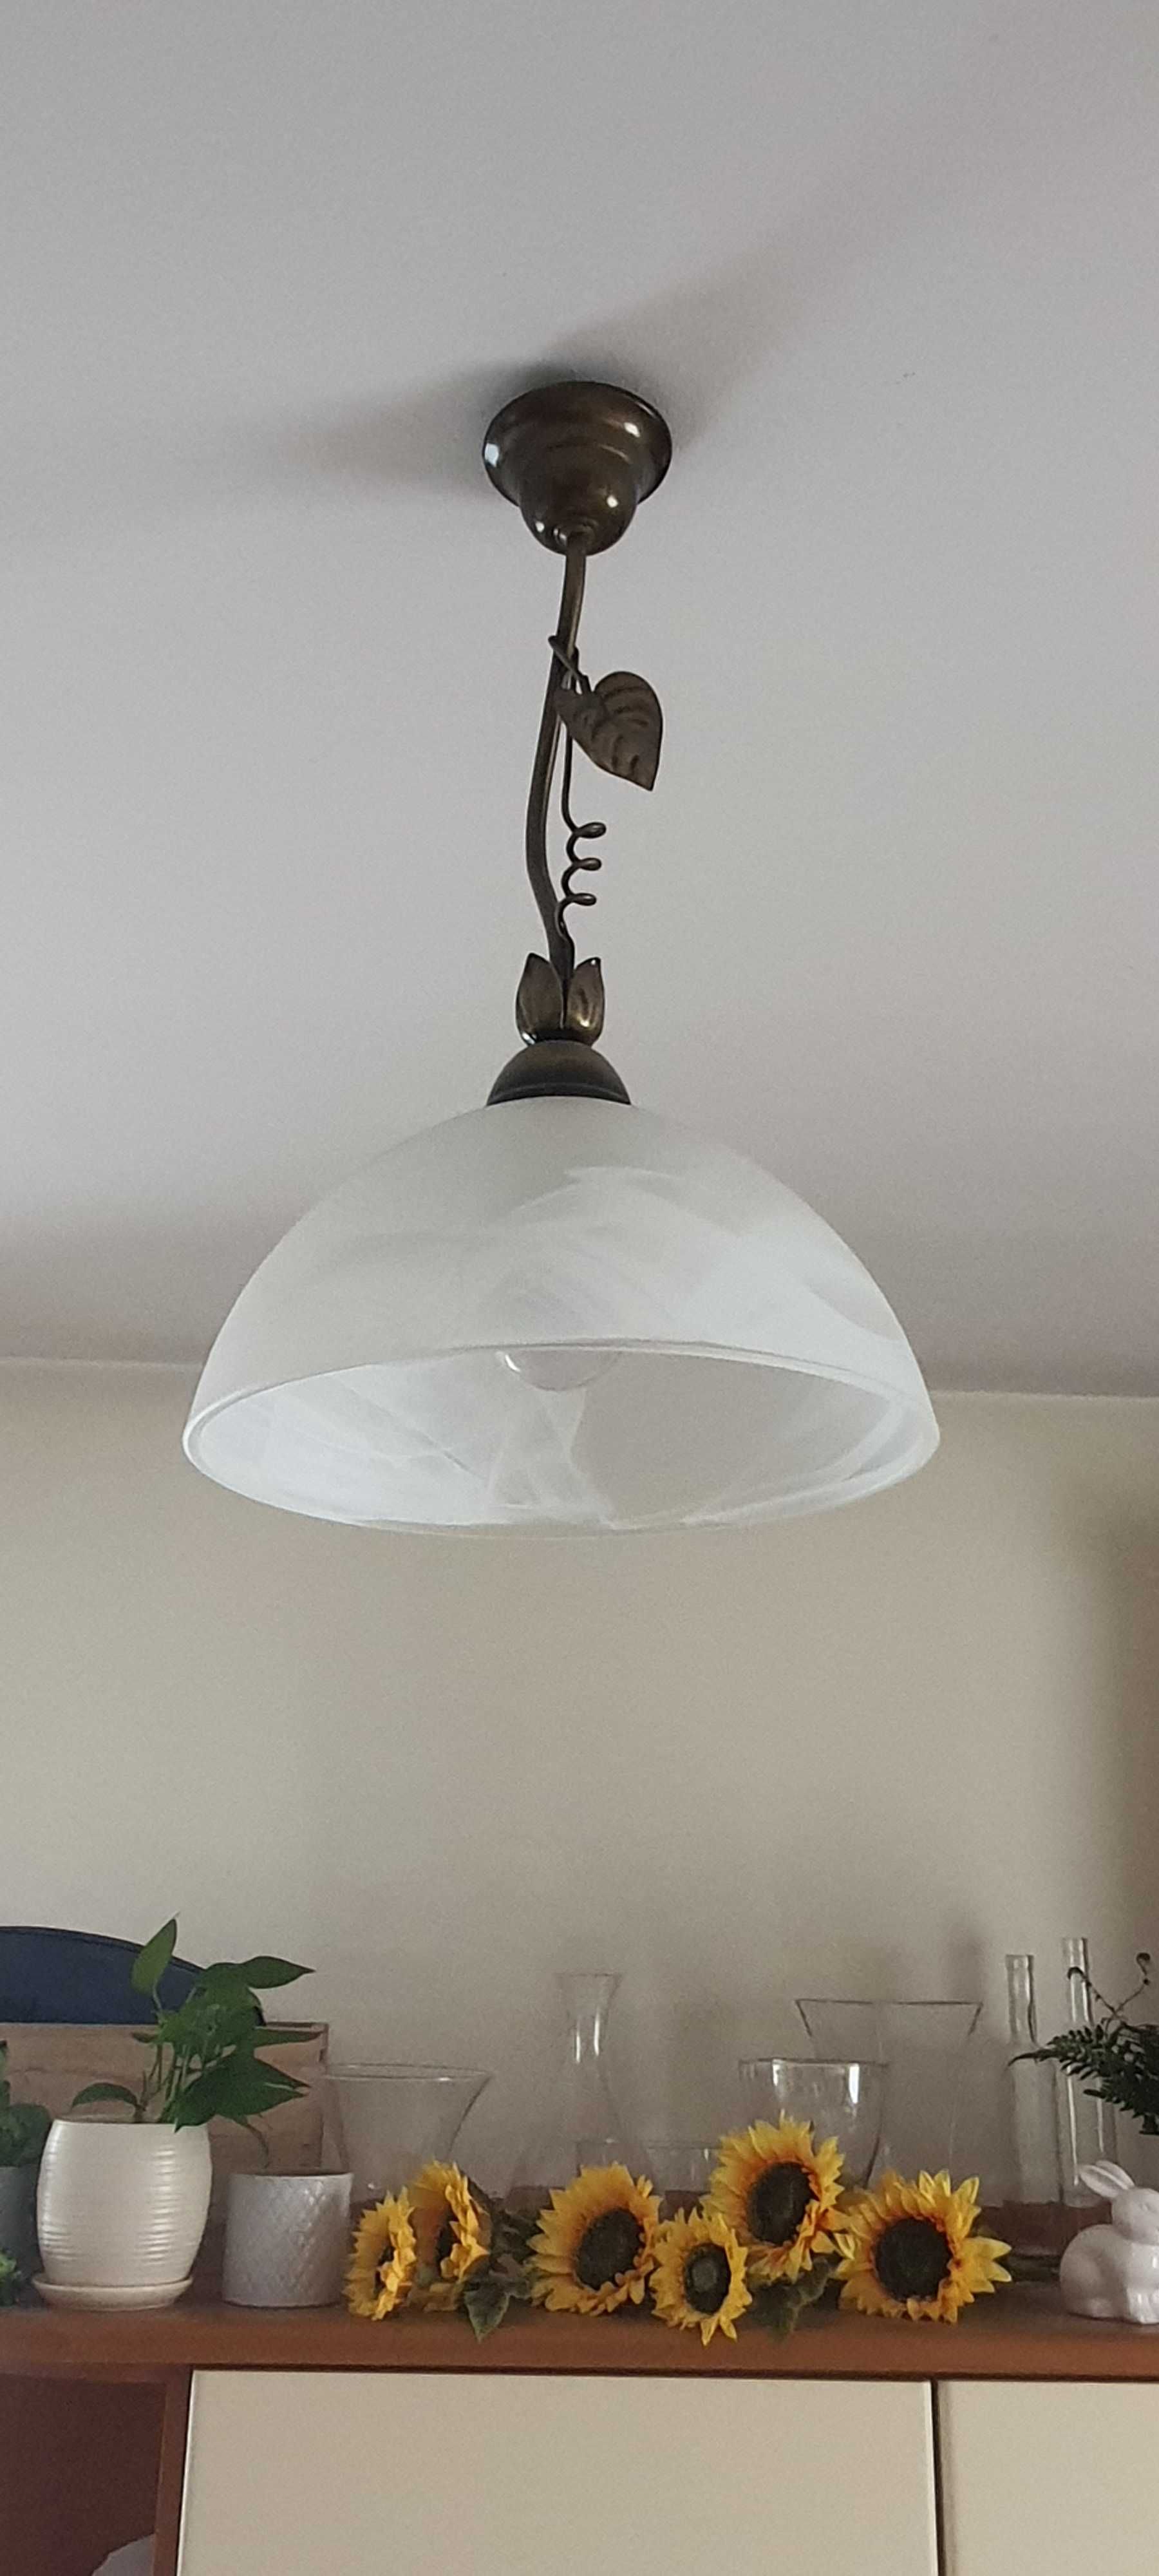 Lampa wisząca ze szklanym kloszem